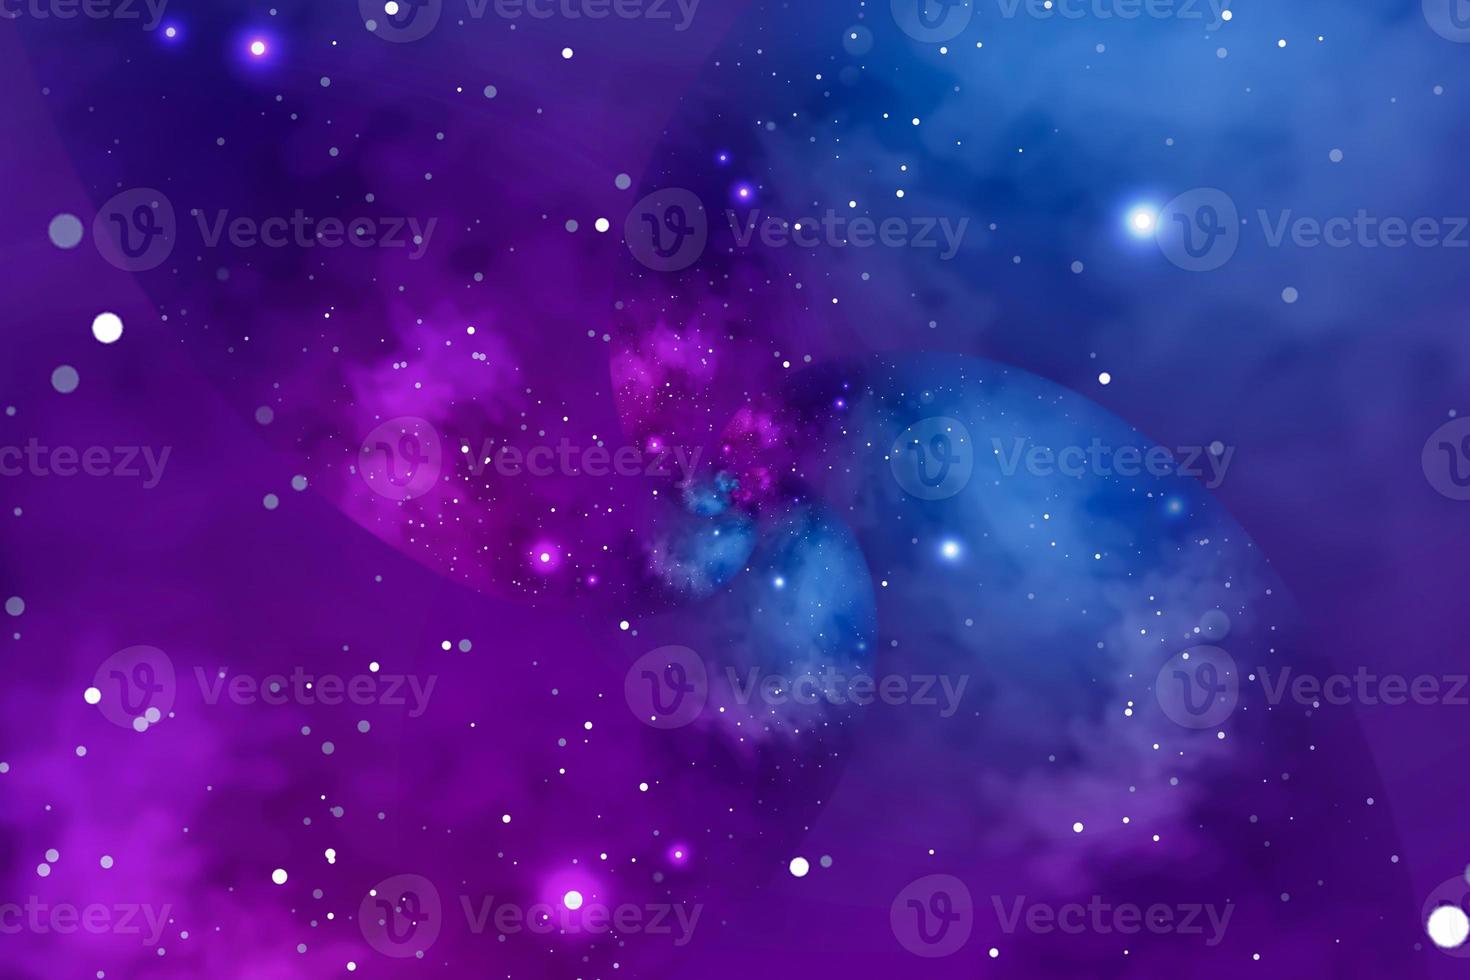 fond étoilé avec nébuleuse bleue et violette. concept pour l'espace, l'astronomie, la galaxie, l'univers, la science photo